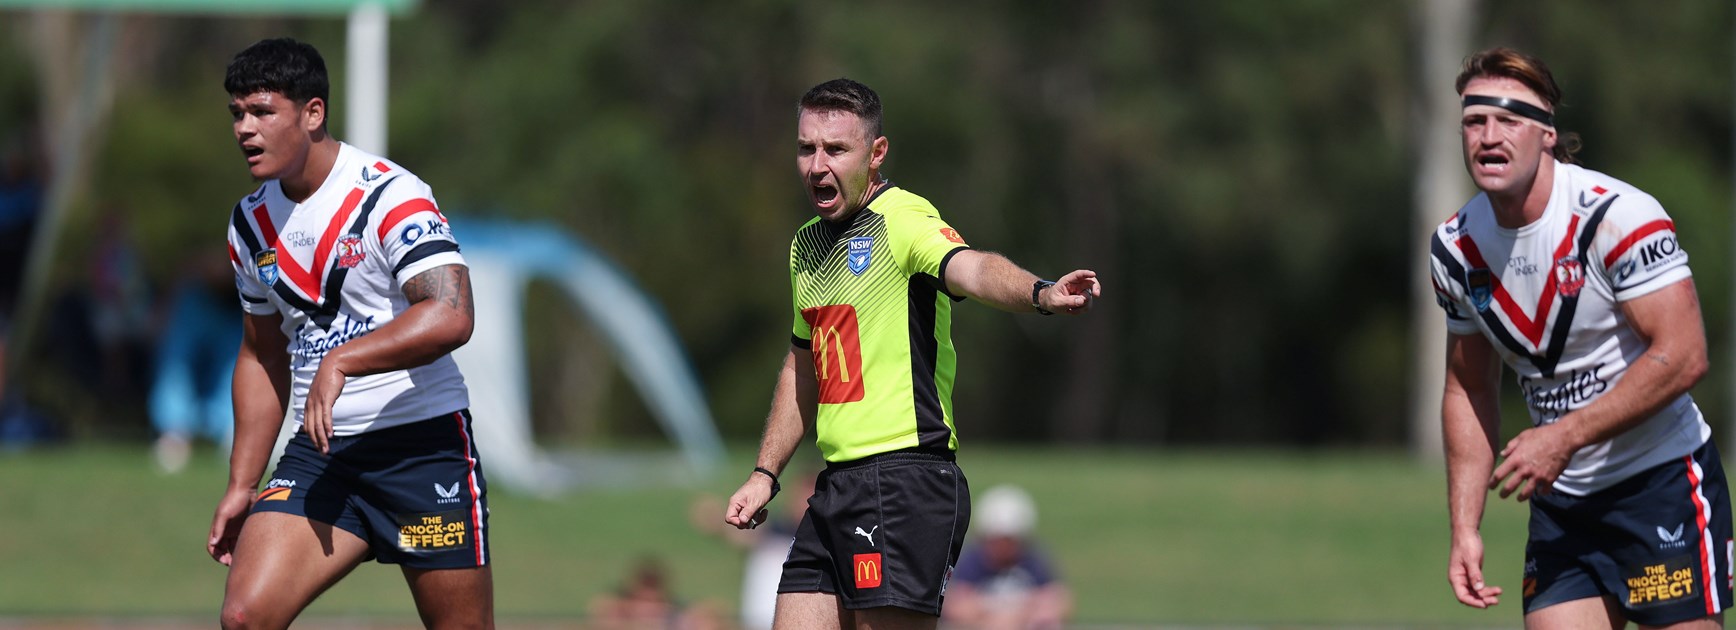 NSWRL referee to make NRL debut